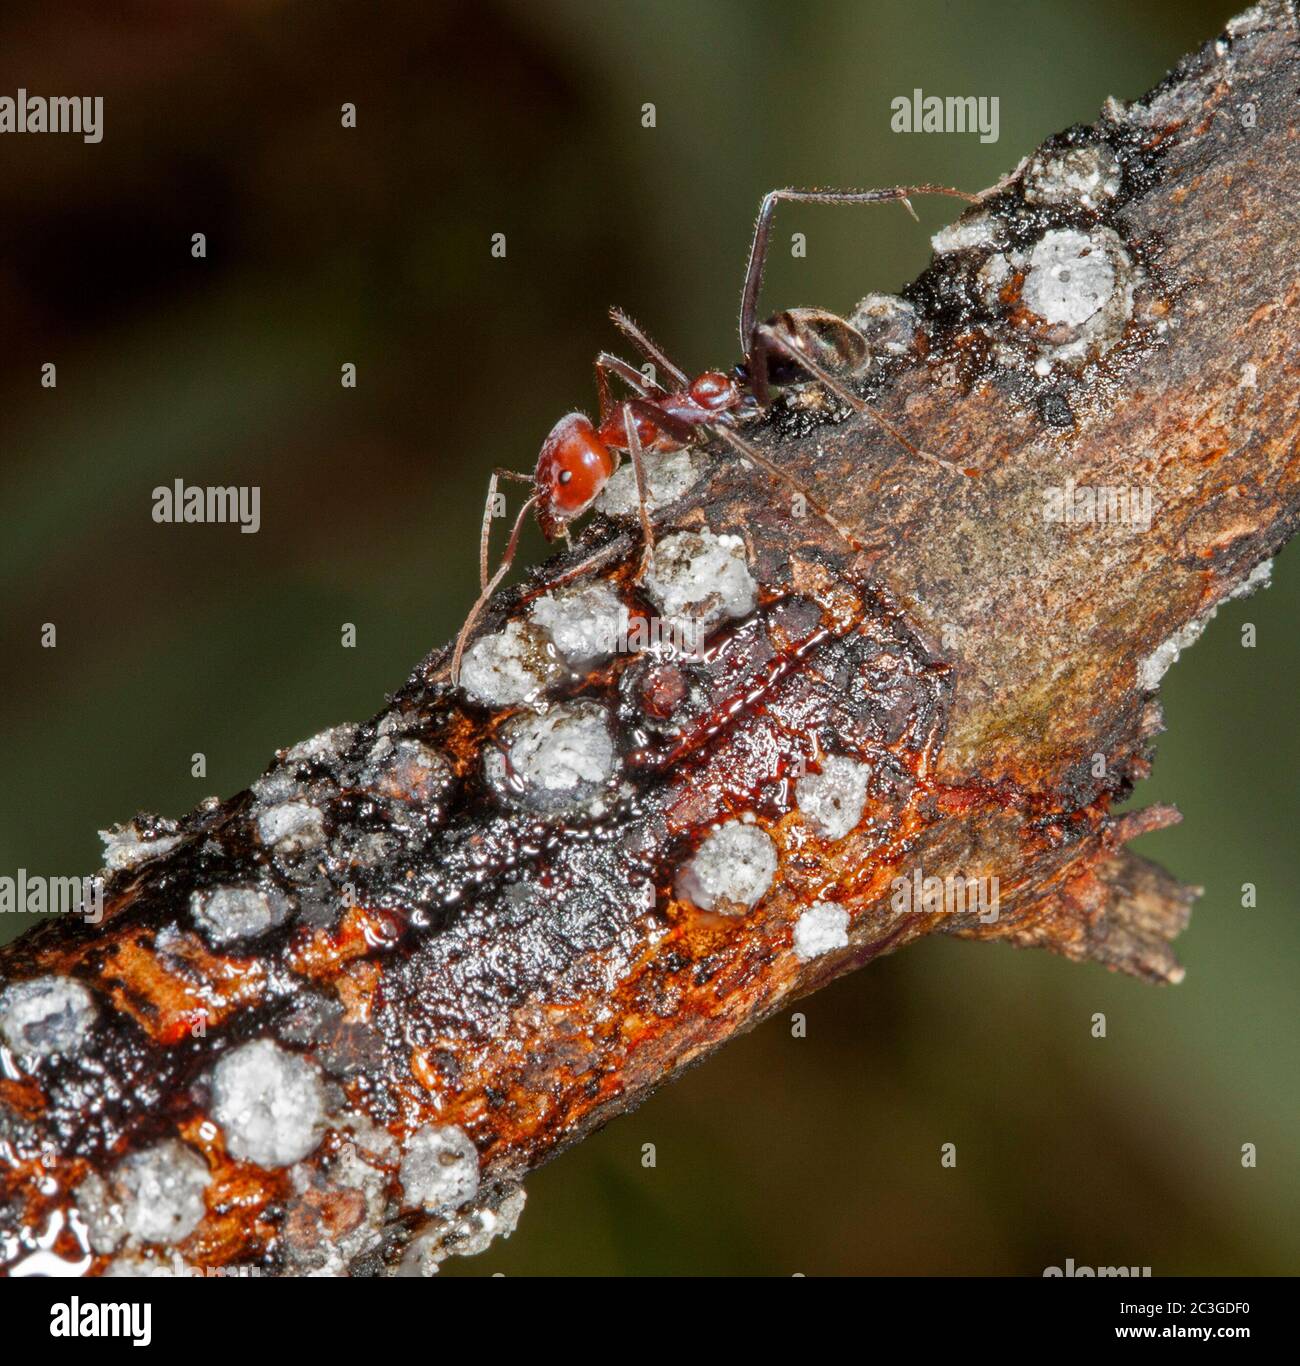 Große rote und schwarze Ameisen, die sich auf Schuppe Insekten auf Zweig des Strauches vor dunkelgrünem Hintergrund ernähren Stockfoto